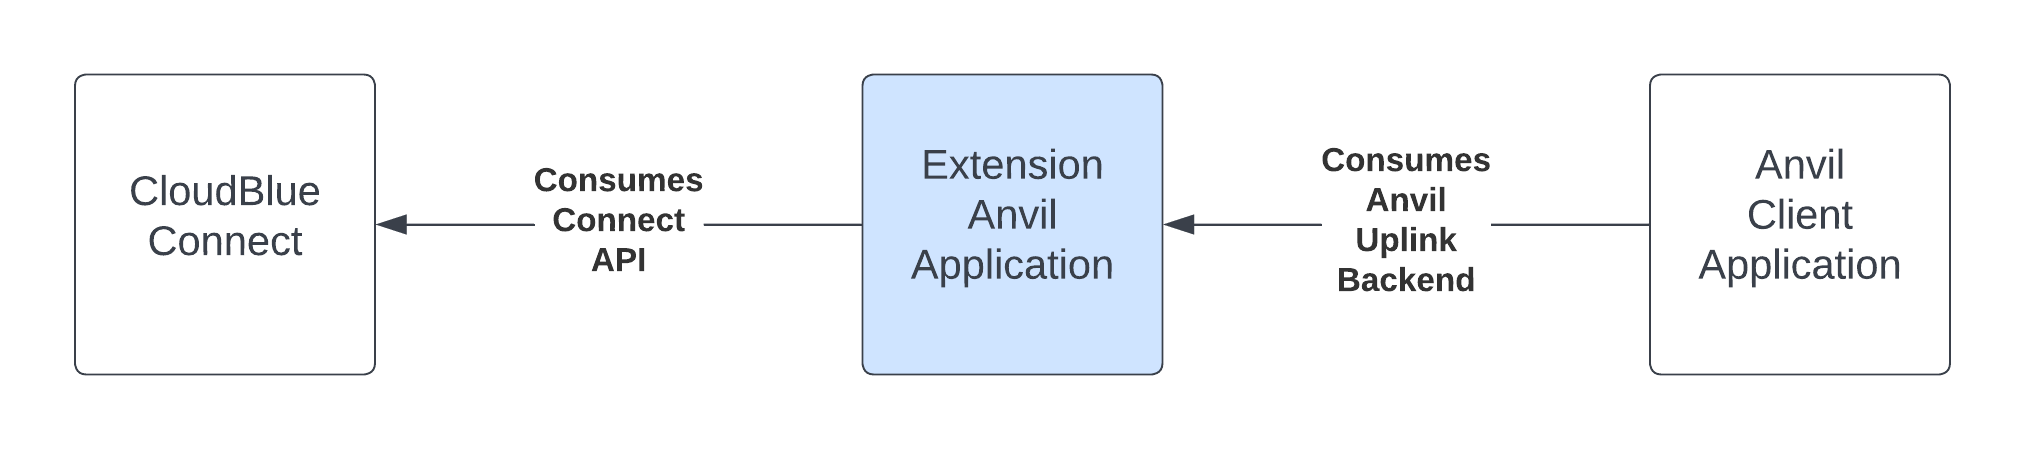 Anvil App Diagram